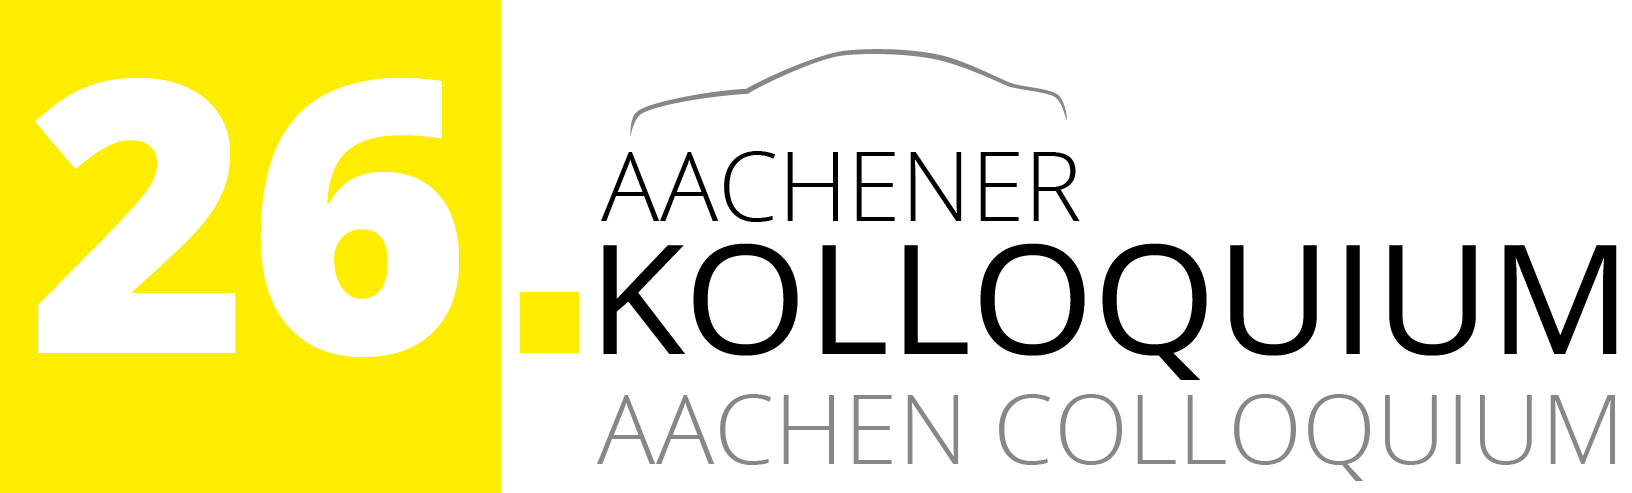 [Logo: Aachener Kolloquium]